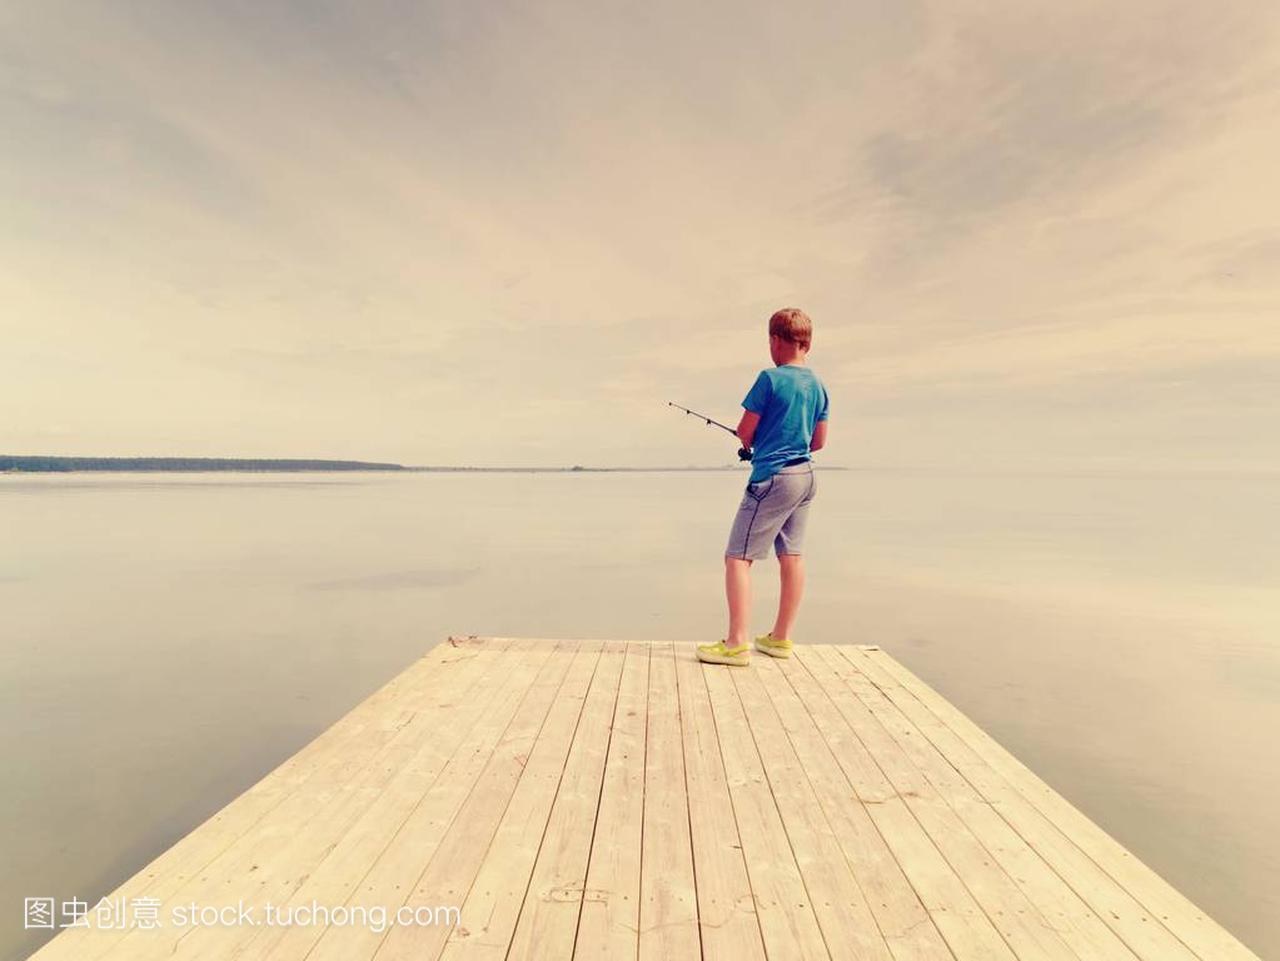 夏天的时候, 小男孩在木痣上钓鱼。蓝色 t-shirt